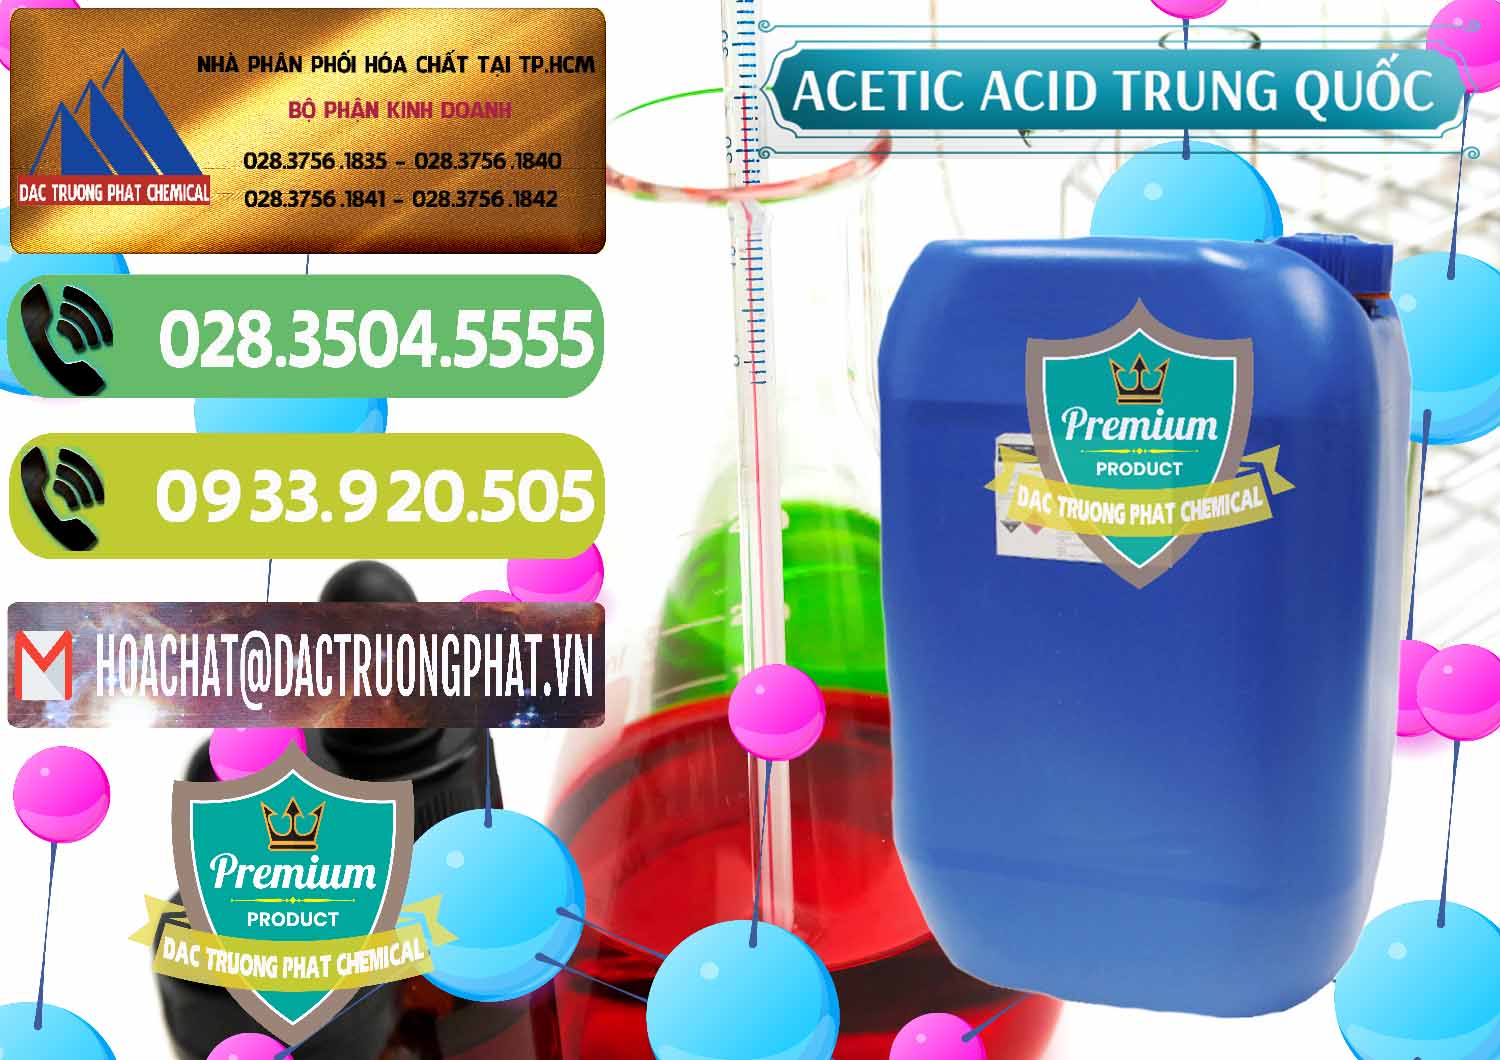 Cty kinh doanh - bán Acetic Acid – Axit Acetic Trung Quốc China - 0358 - Nhà nhập khẩu & cung cấp hóa chất tại TP.HCM - hoachatmientay.vn